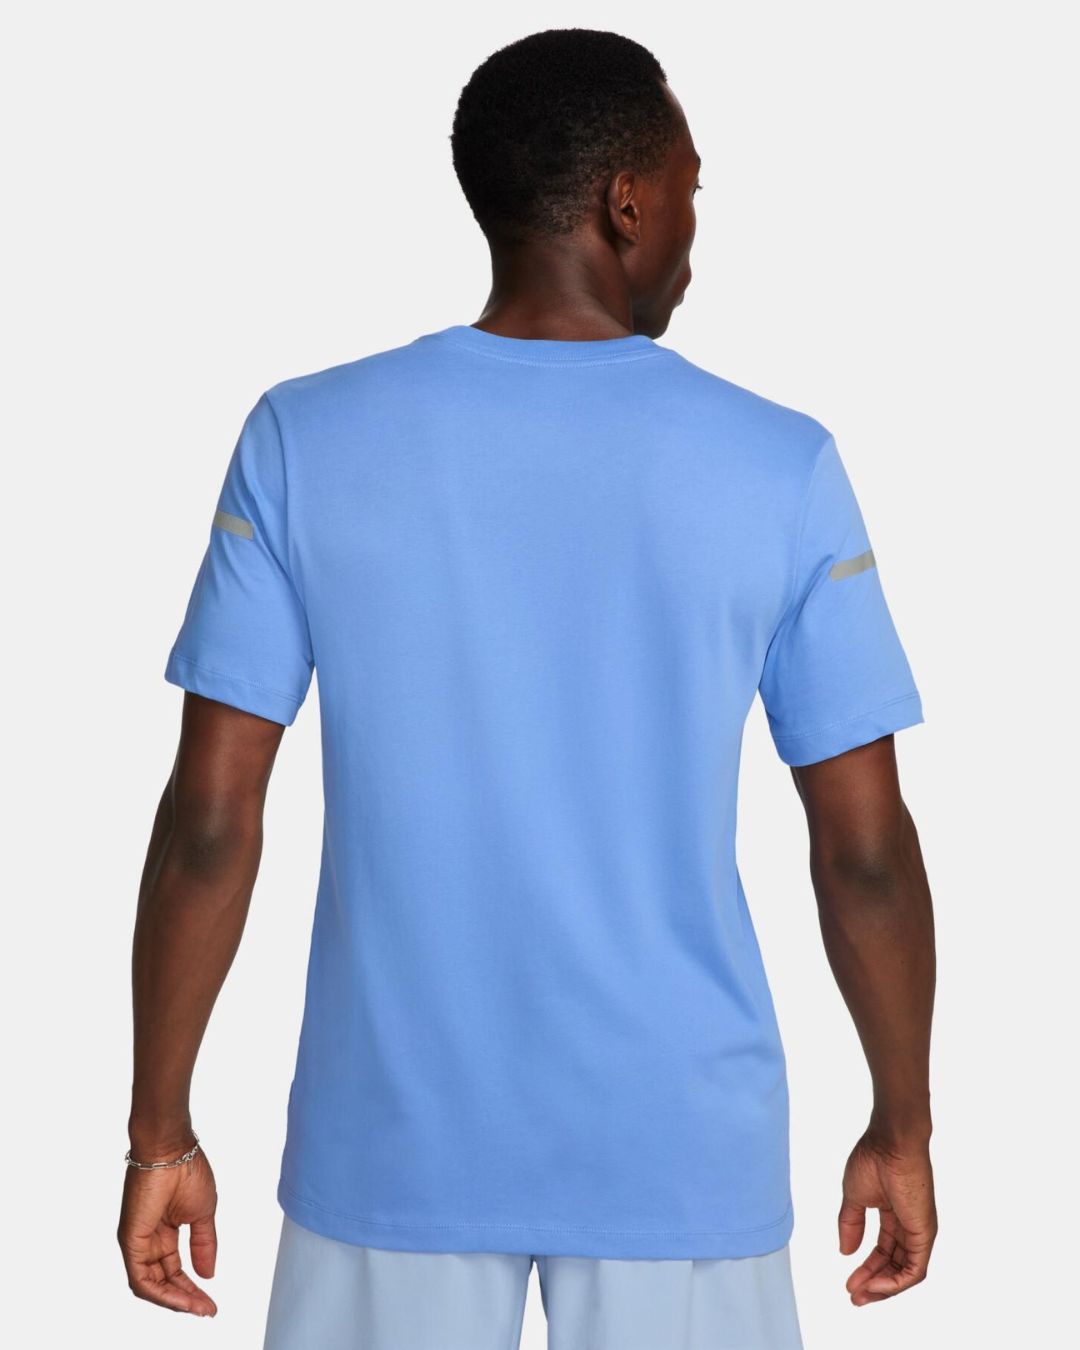 Nike Dri-FIT T-shirt - Blue